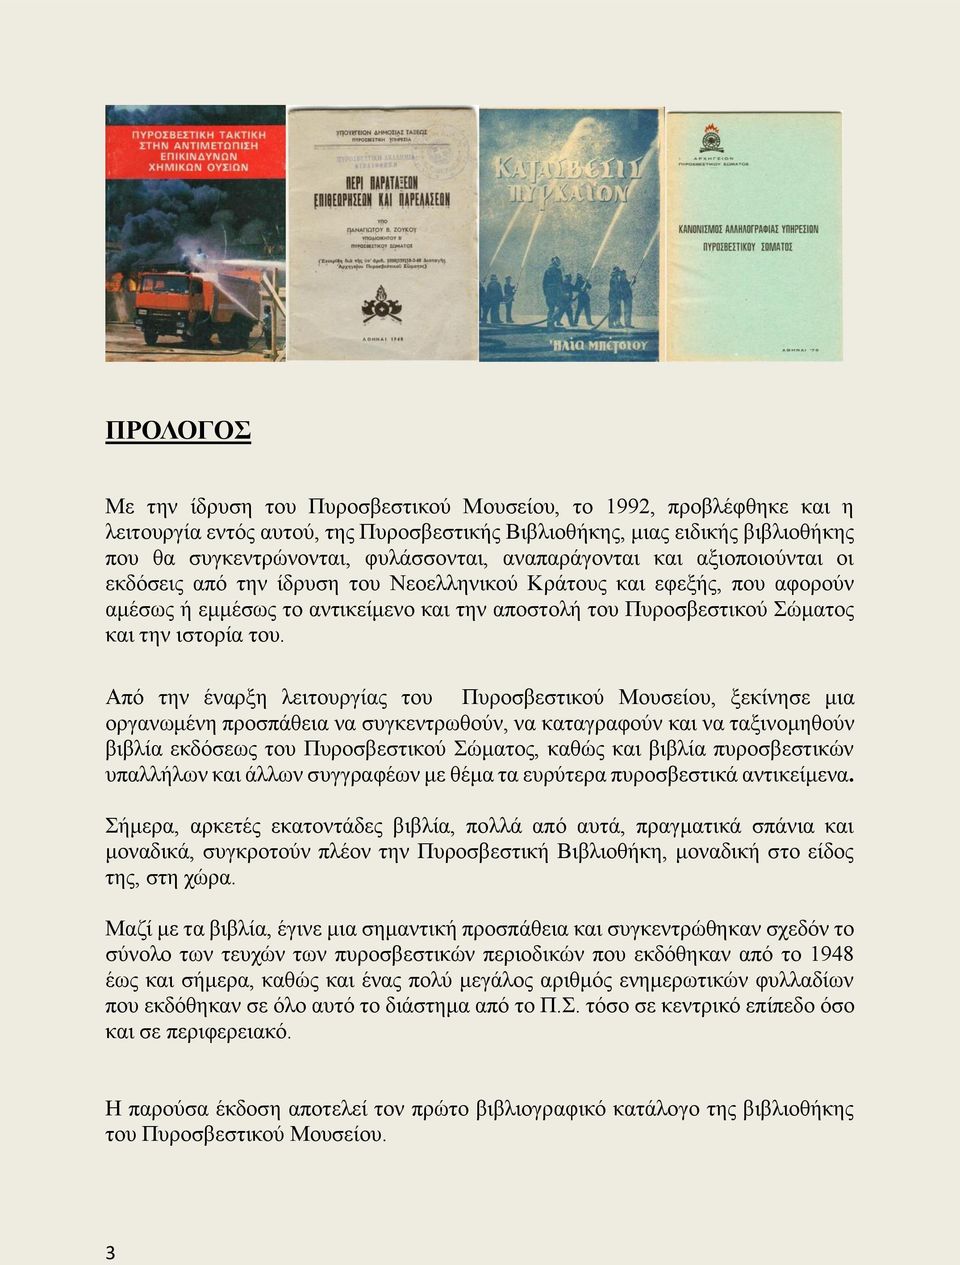 του. Από την έναρξη λειτουργίας του Πυροσβεστικού Μουσείου, ξεκίνησε μια οργανωμένη προσπάθεια να συγκεντρωθούν, να καταγραφούν και να ταξινομηθούν βιβλία εκδόσεως του Πυροσβεστικού Σώματος, καθώς